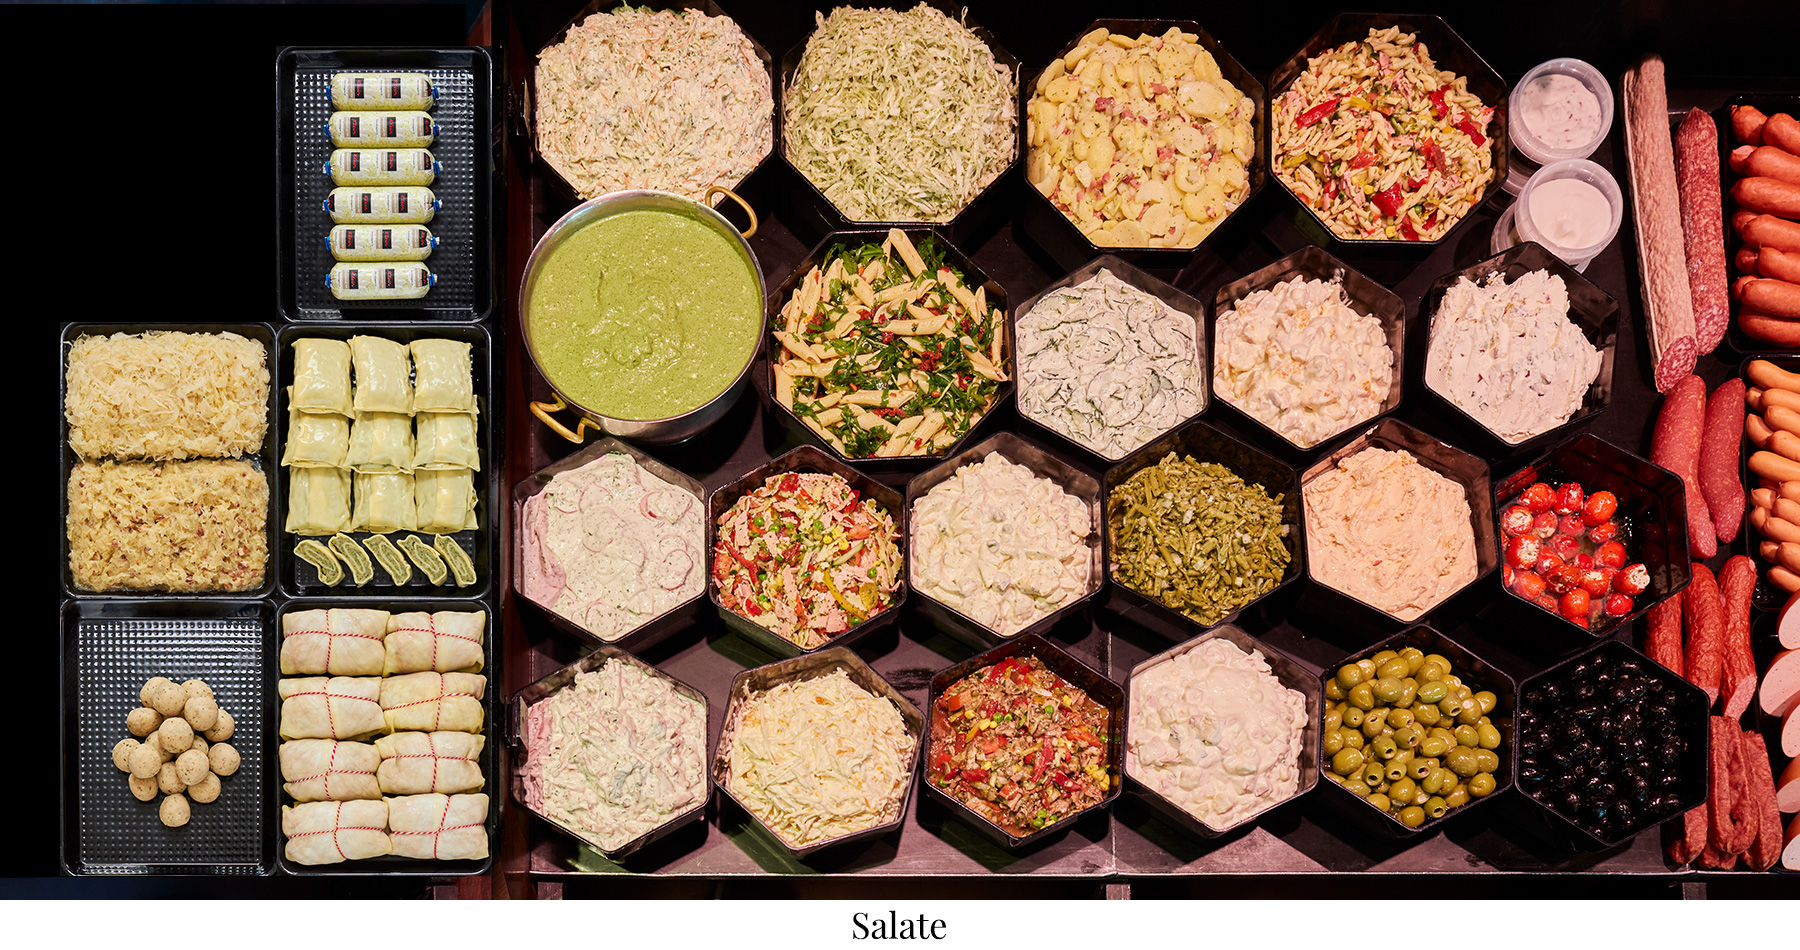 Das Bild zeigt eine Fleischtheke mit Salate